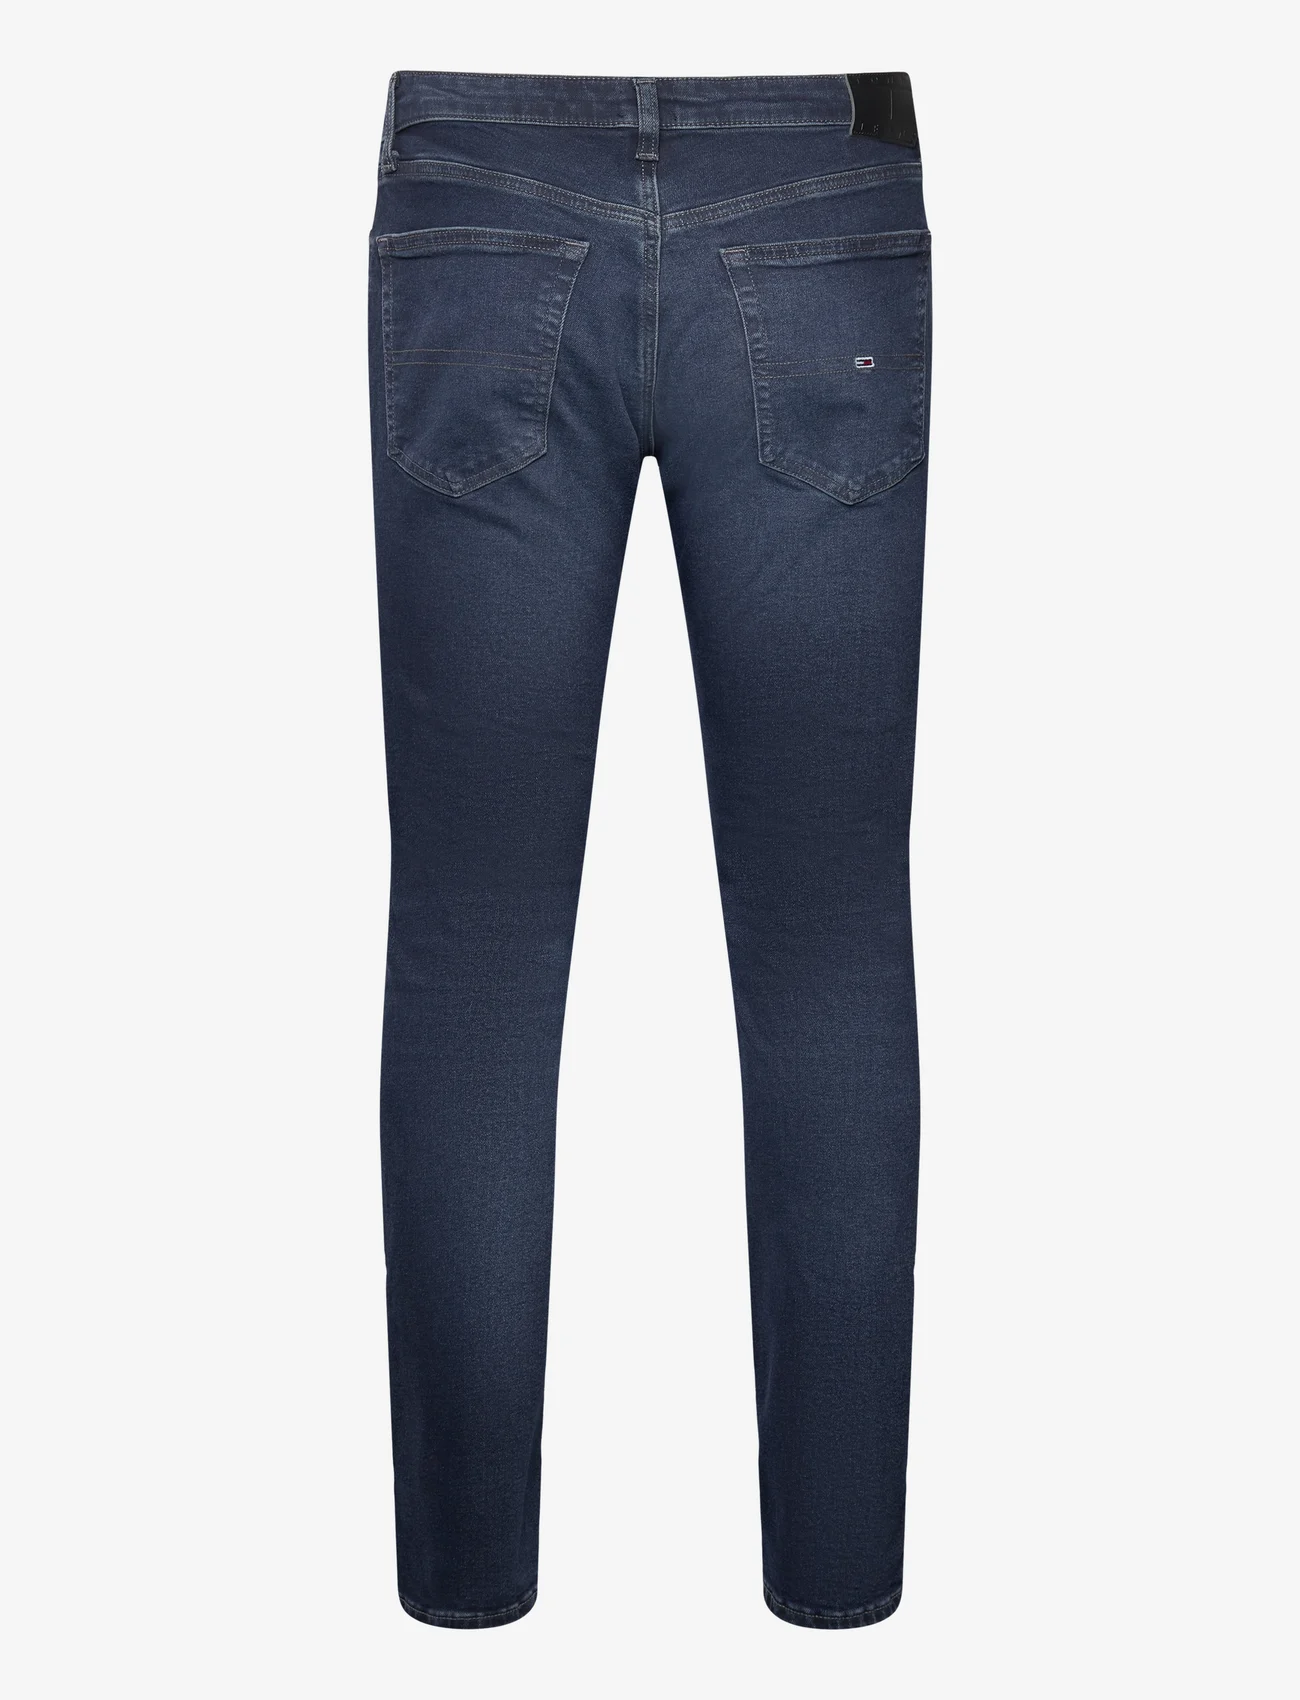 Tommy Jeans - SCANTON SLIM AH1267 - slim fit jeans - denim dark - 1